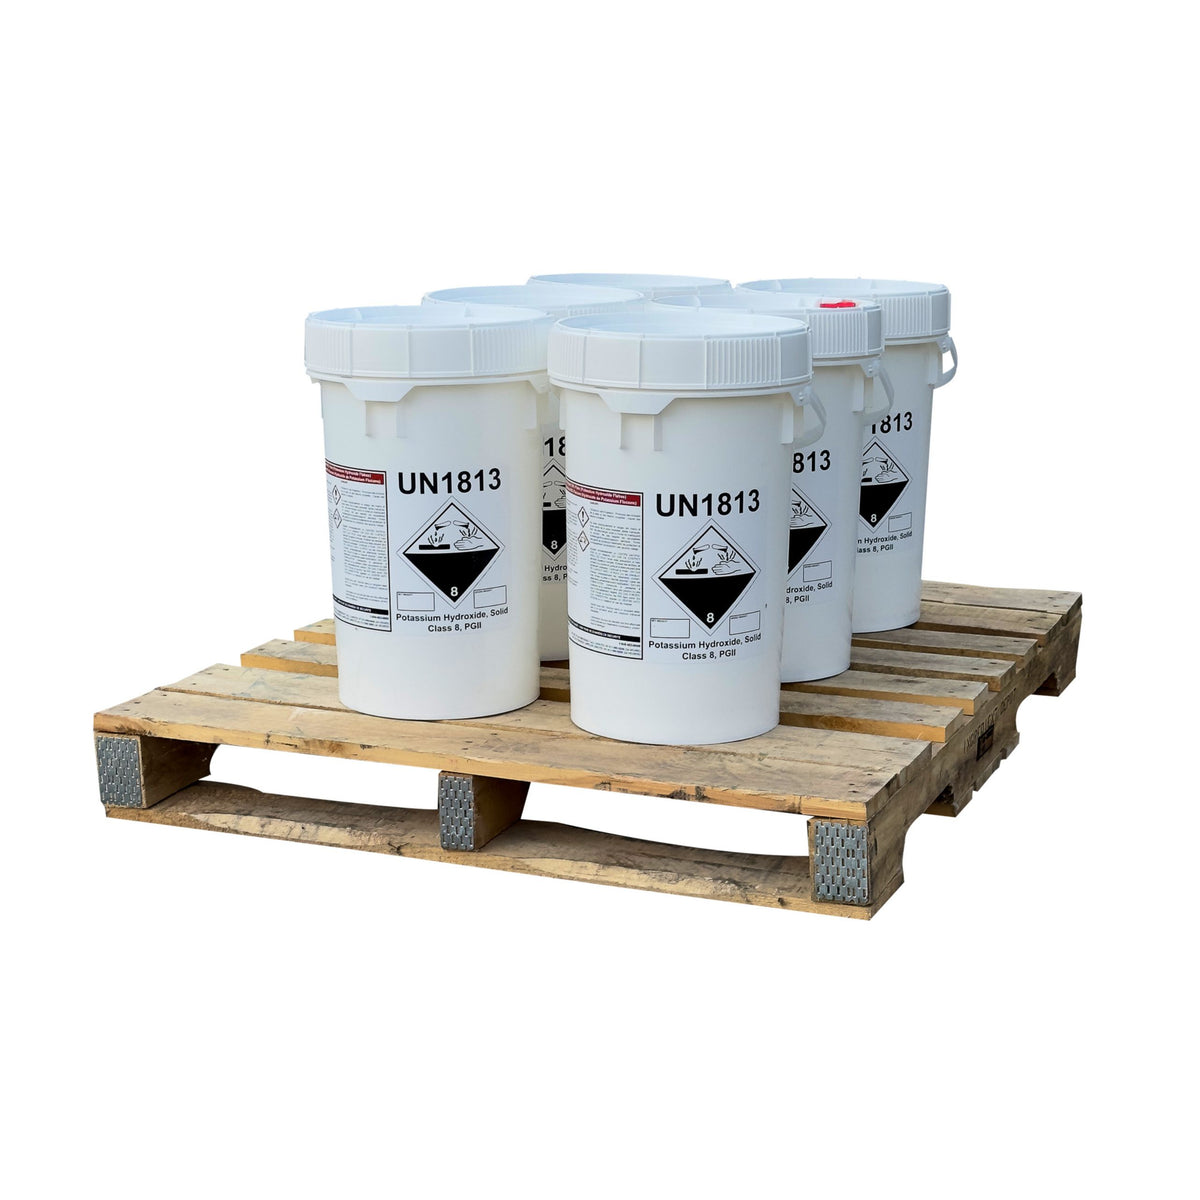 Potassium Hydroxide (Caustic Potash or KOH) Flakes - 300 lbs 6 Pails on a Pallet